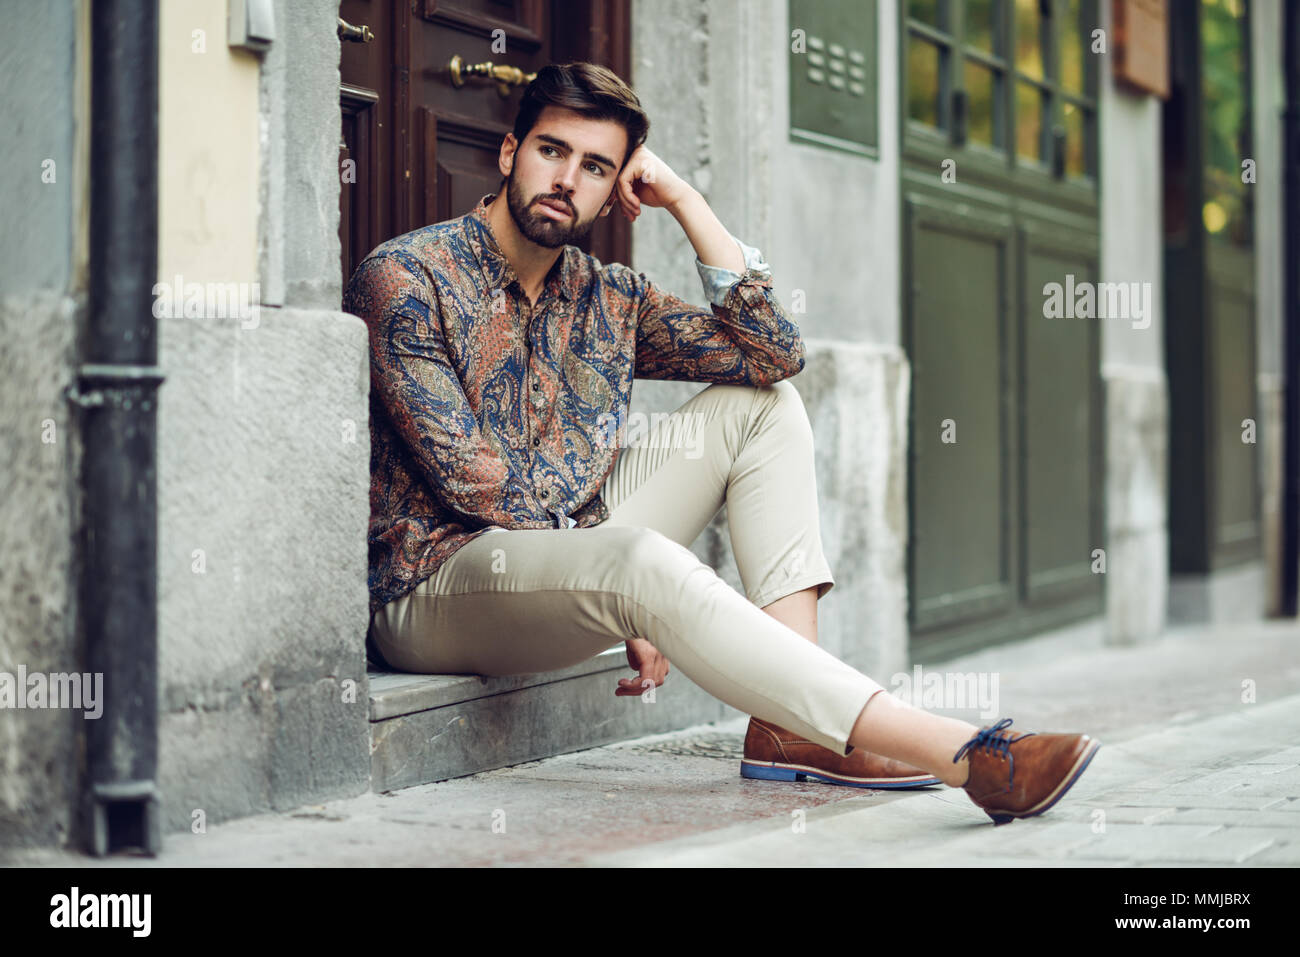 Joven Hombre Barbado, modelo de moda urbana, sentados en un paso vistiendo  ropa casual. Chico con barba y peinado moderno mirando a otro lado de la  calle Fotografía de stock - Alamy